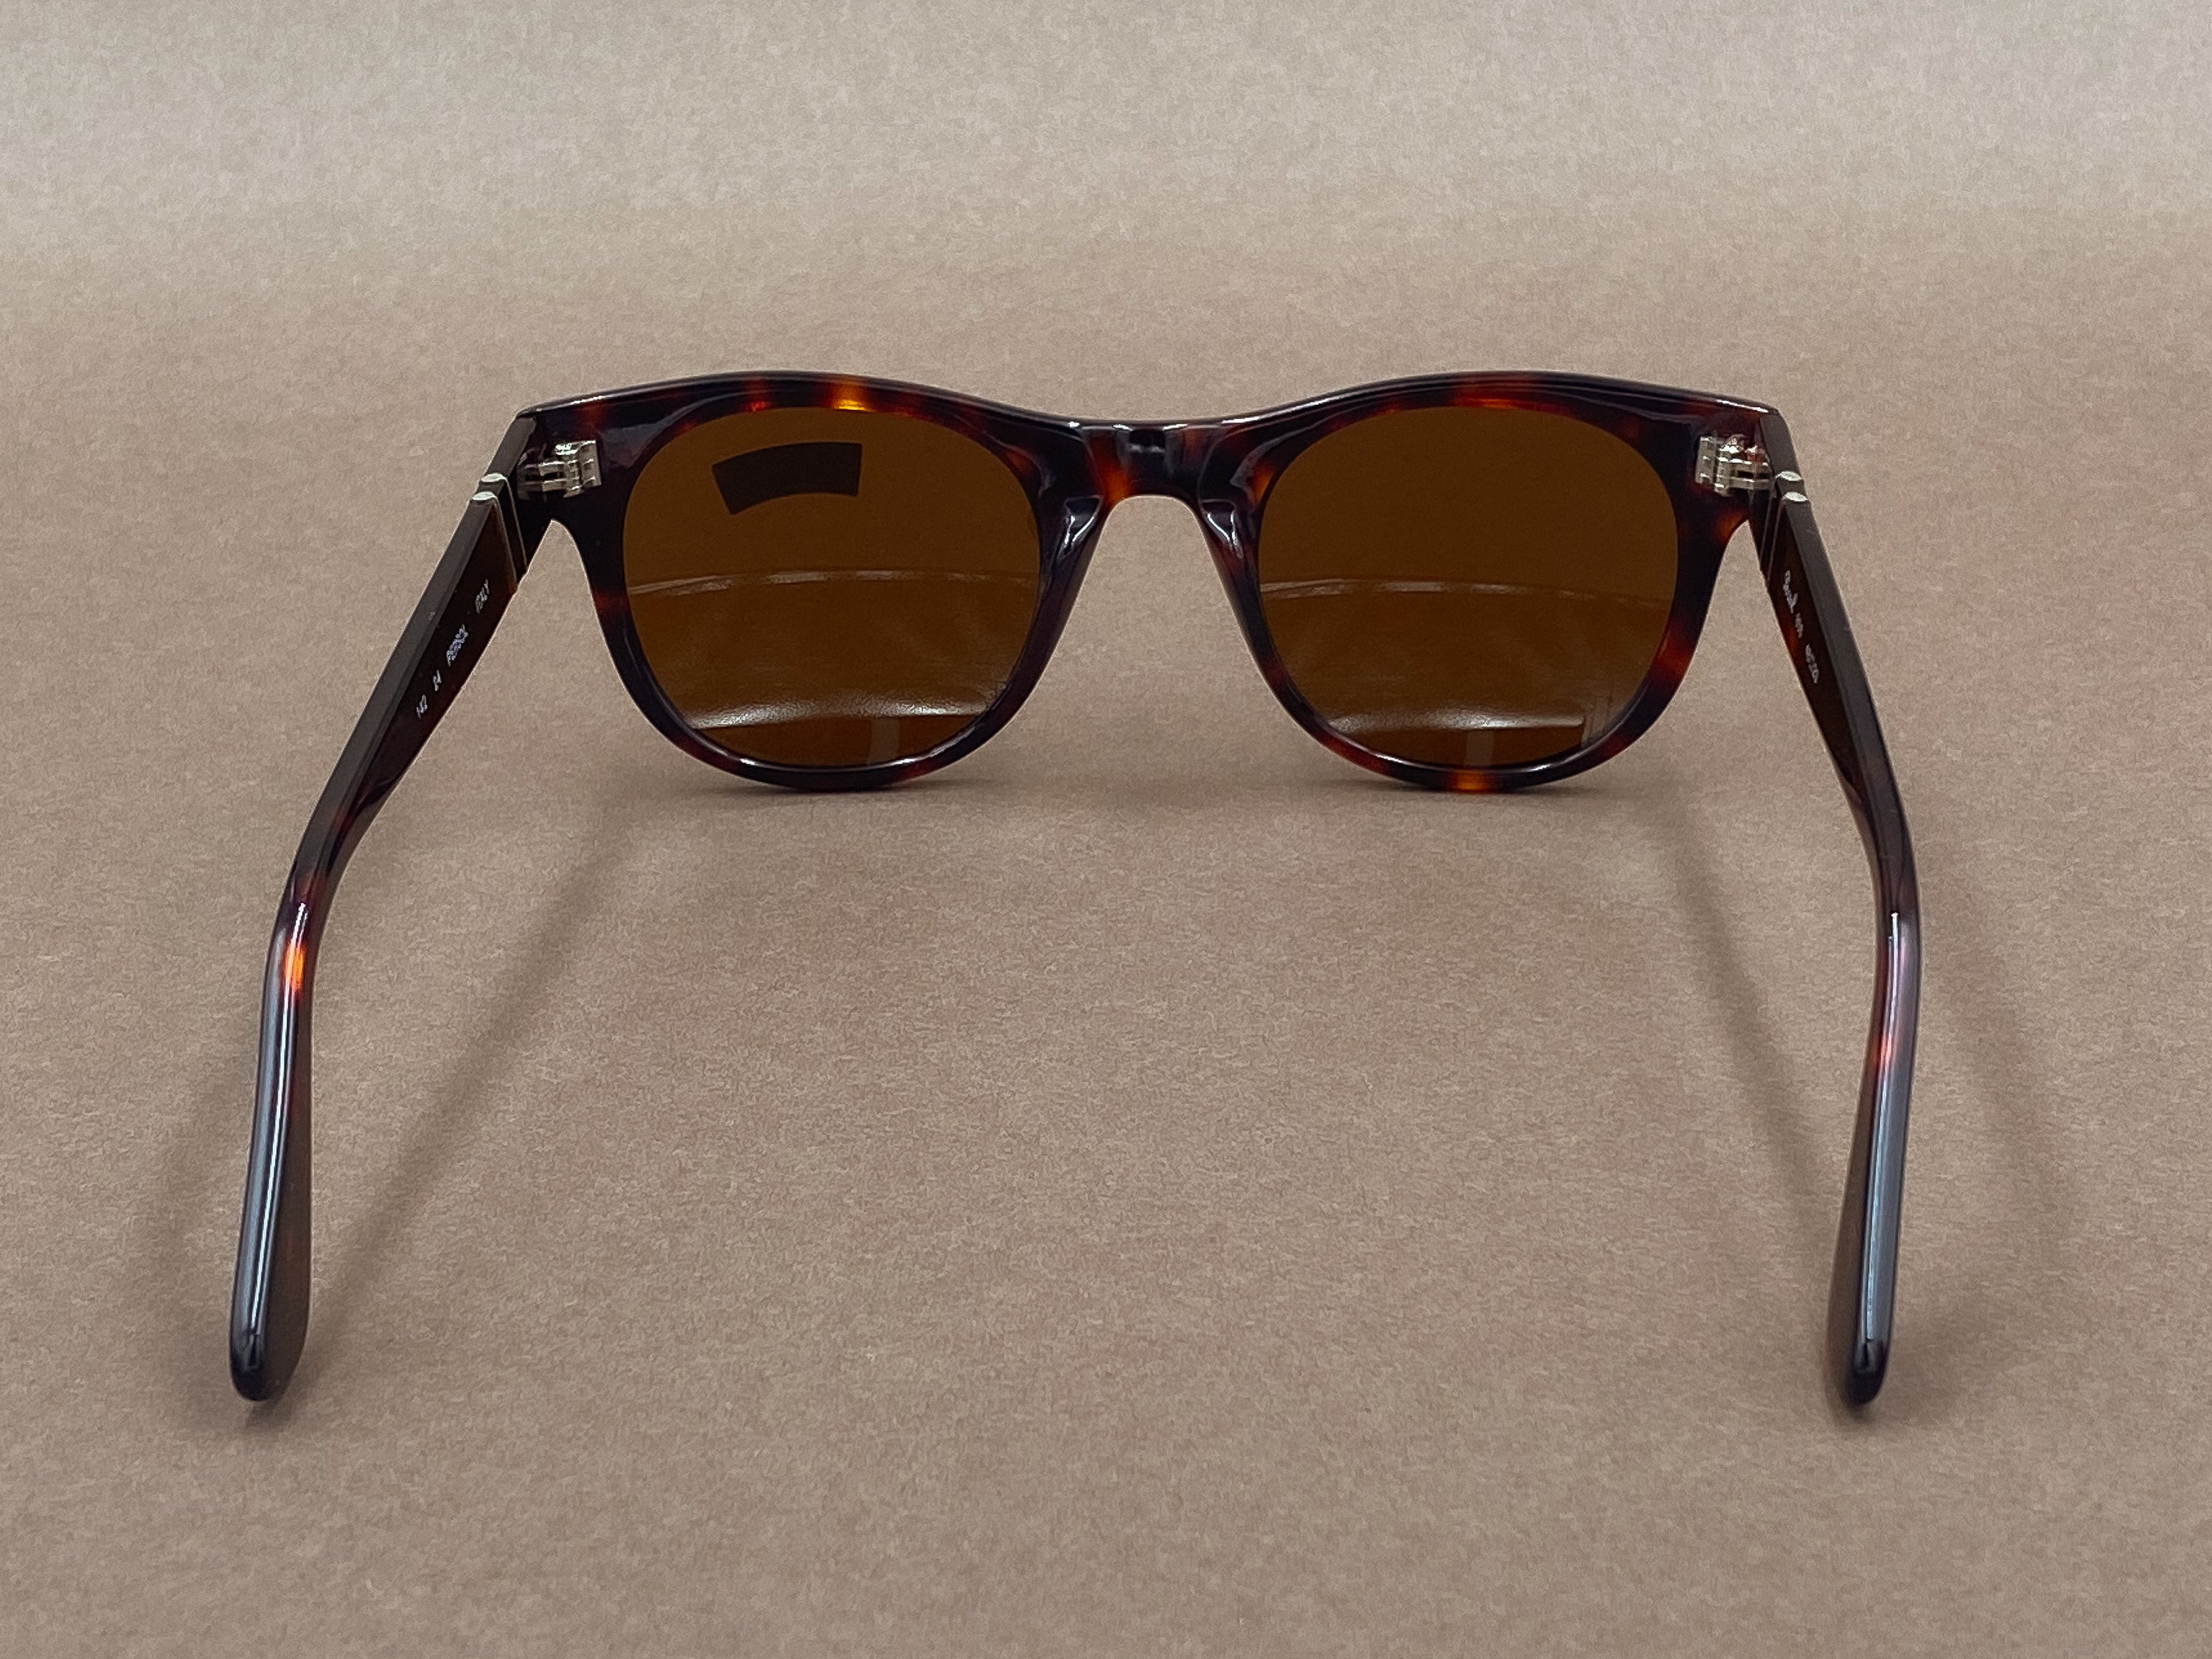 Persol 856 sunglasses